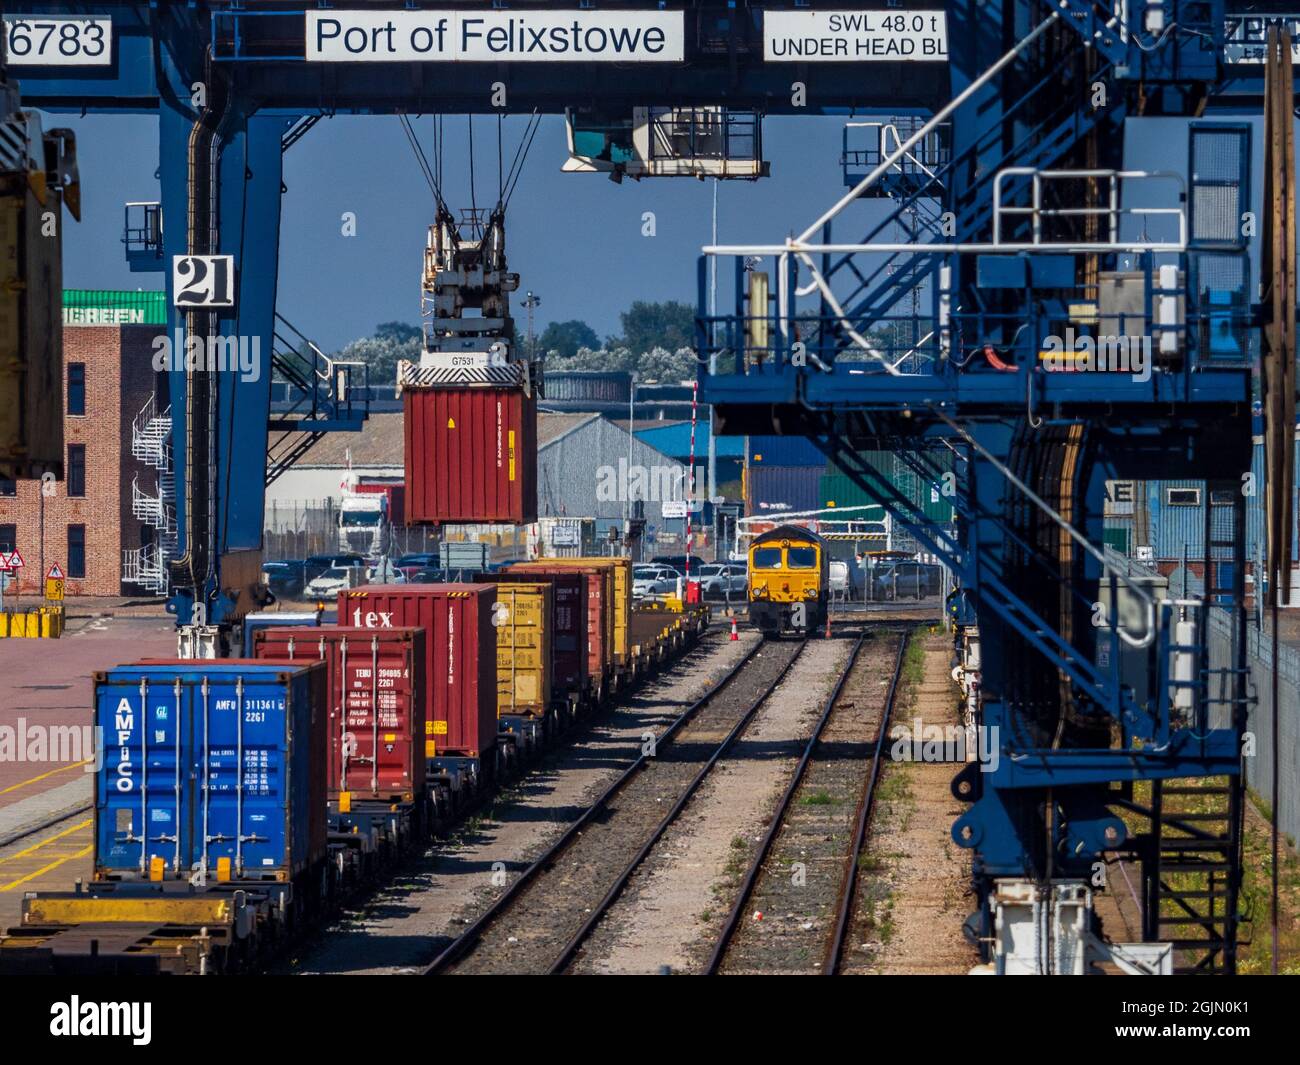 Fret ferroviaire Royaume-Uni - conteneurs intermodaux chargés sur les trains de marchandises du port Felixstowe, le plus grand port de conteneurs du Royaume-Uni. Banque D'Images